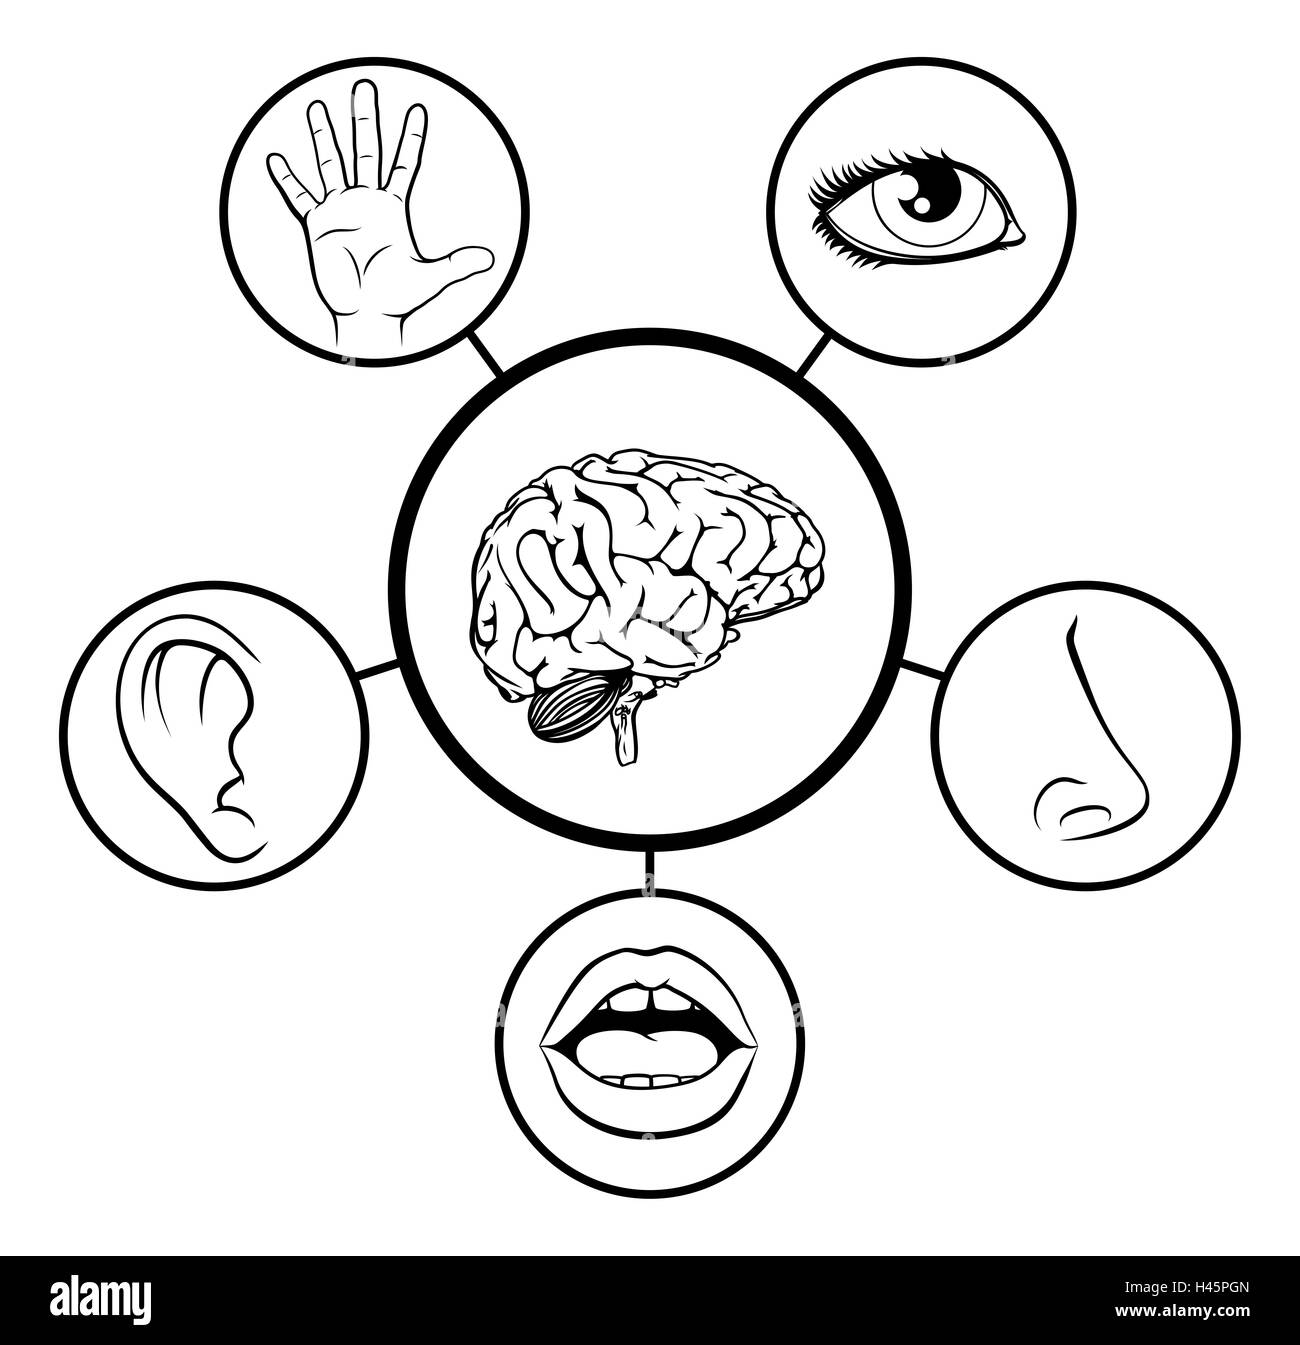 Una scienza istruzione illustrazione di icone che rappresentano i 5 sensi attaccata al cervello centrale in bianco e nero Foto Stock